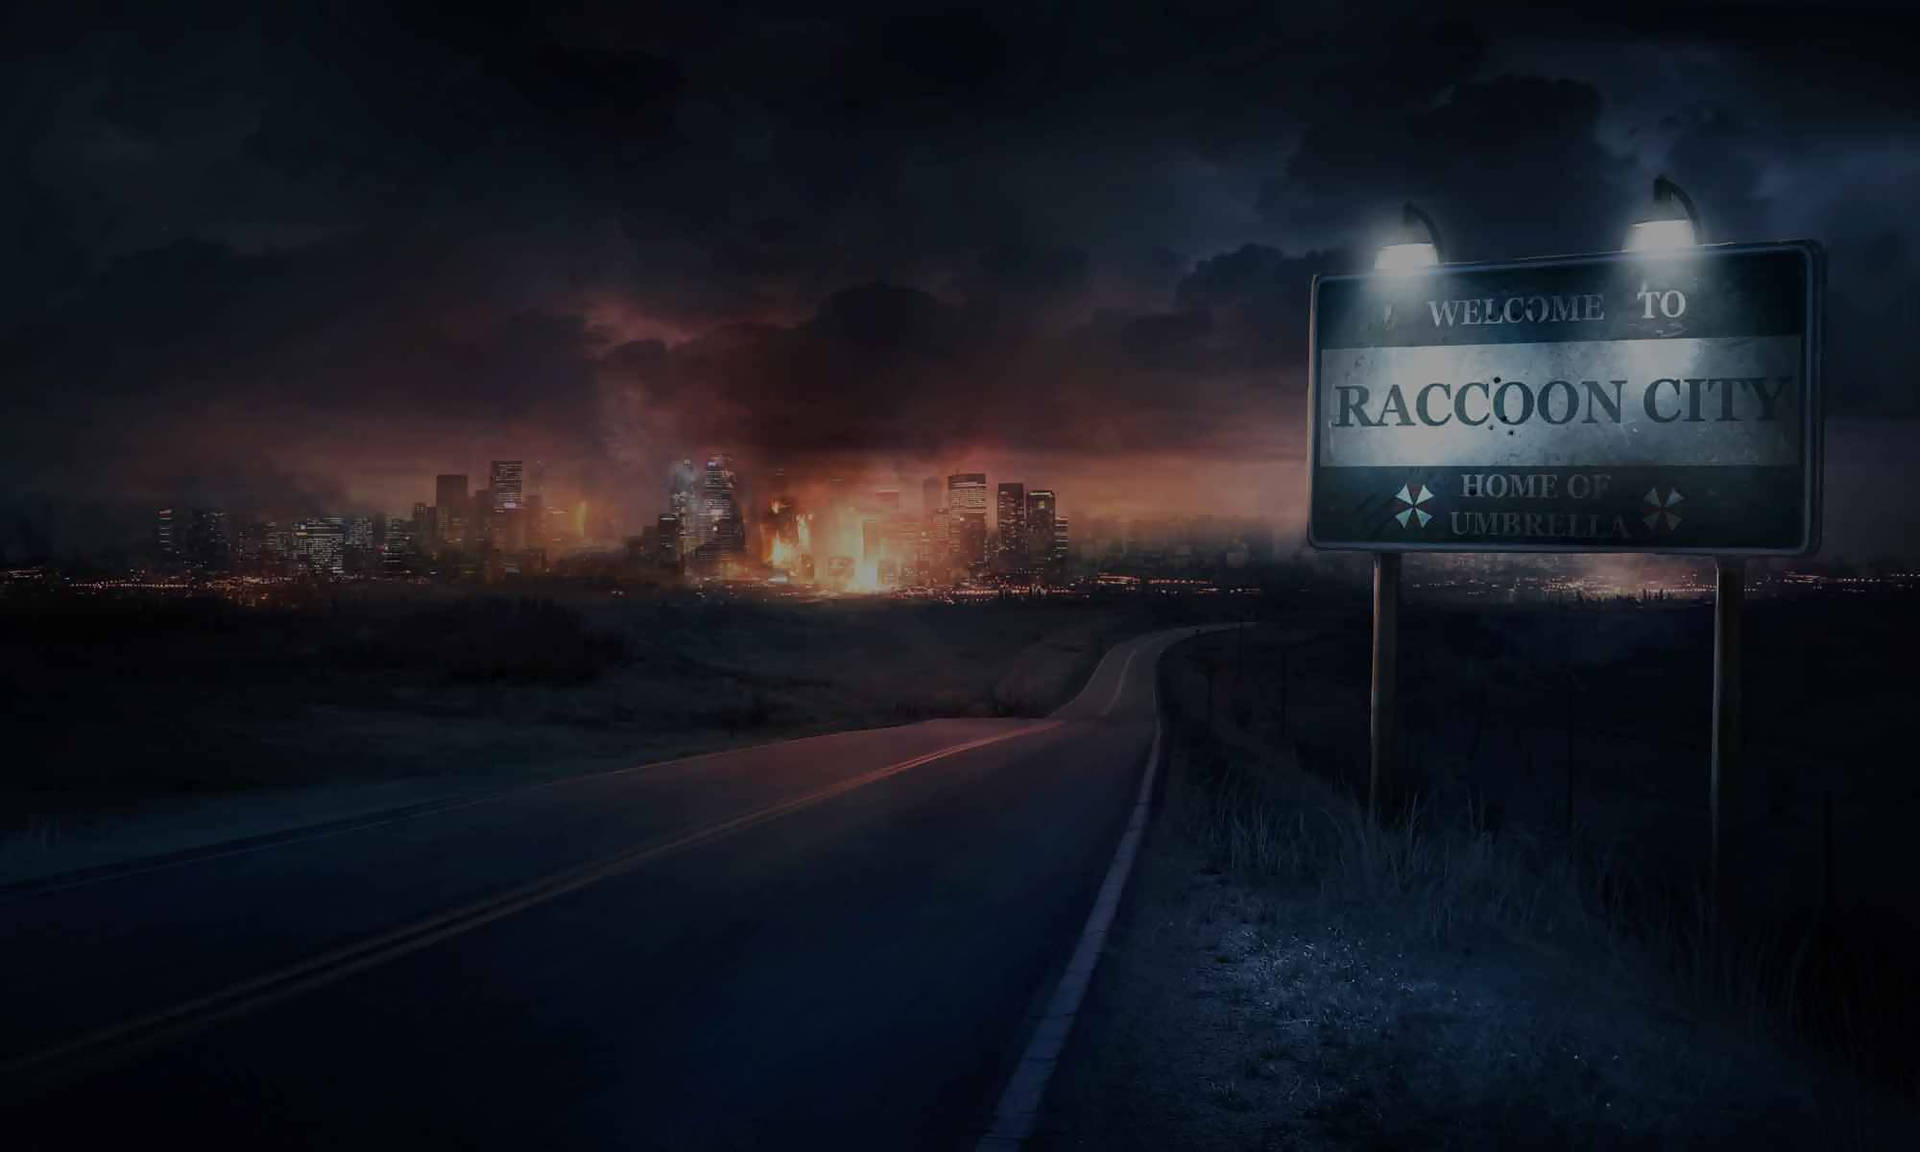 Raccoon City returns in Resident Evil! Wallpaper